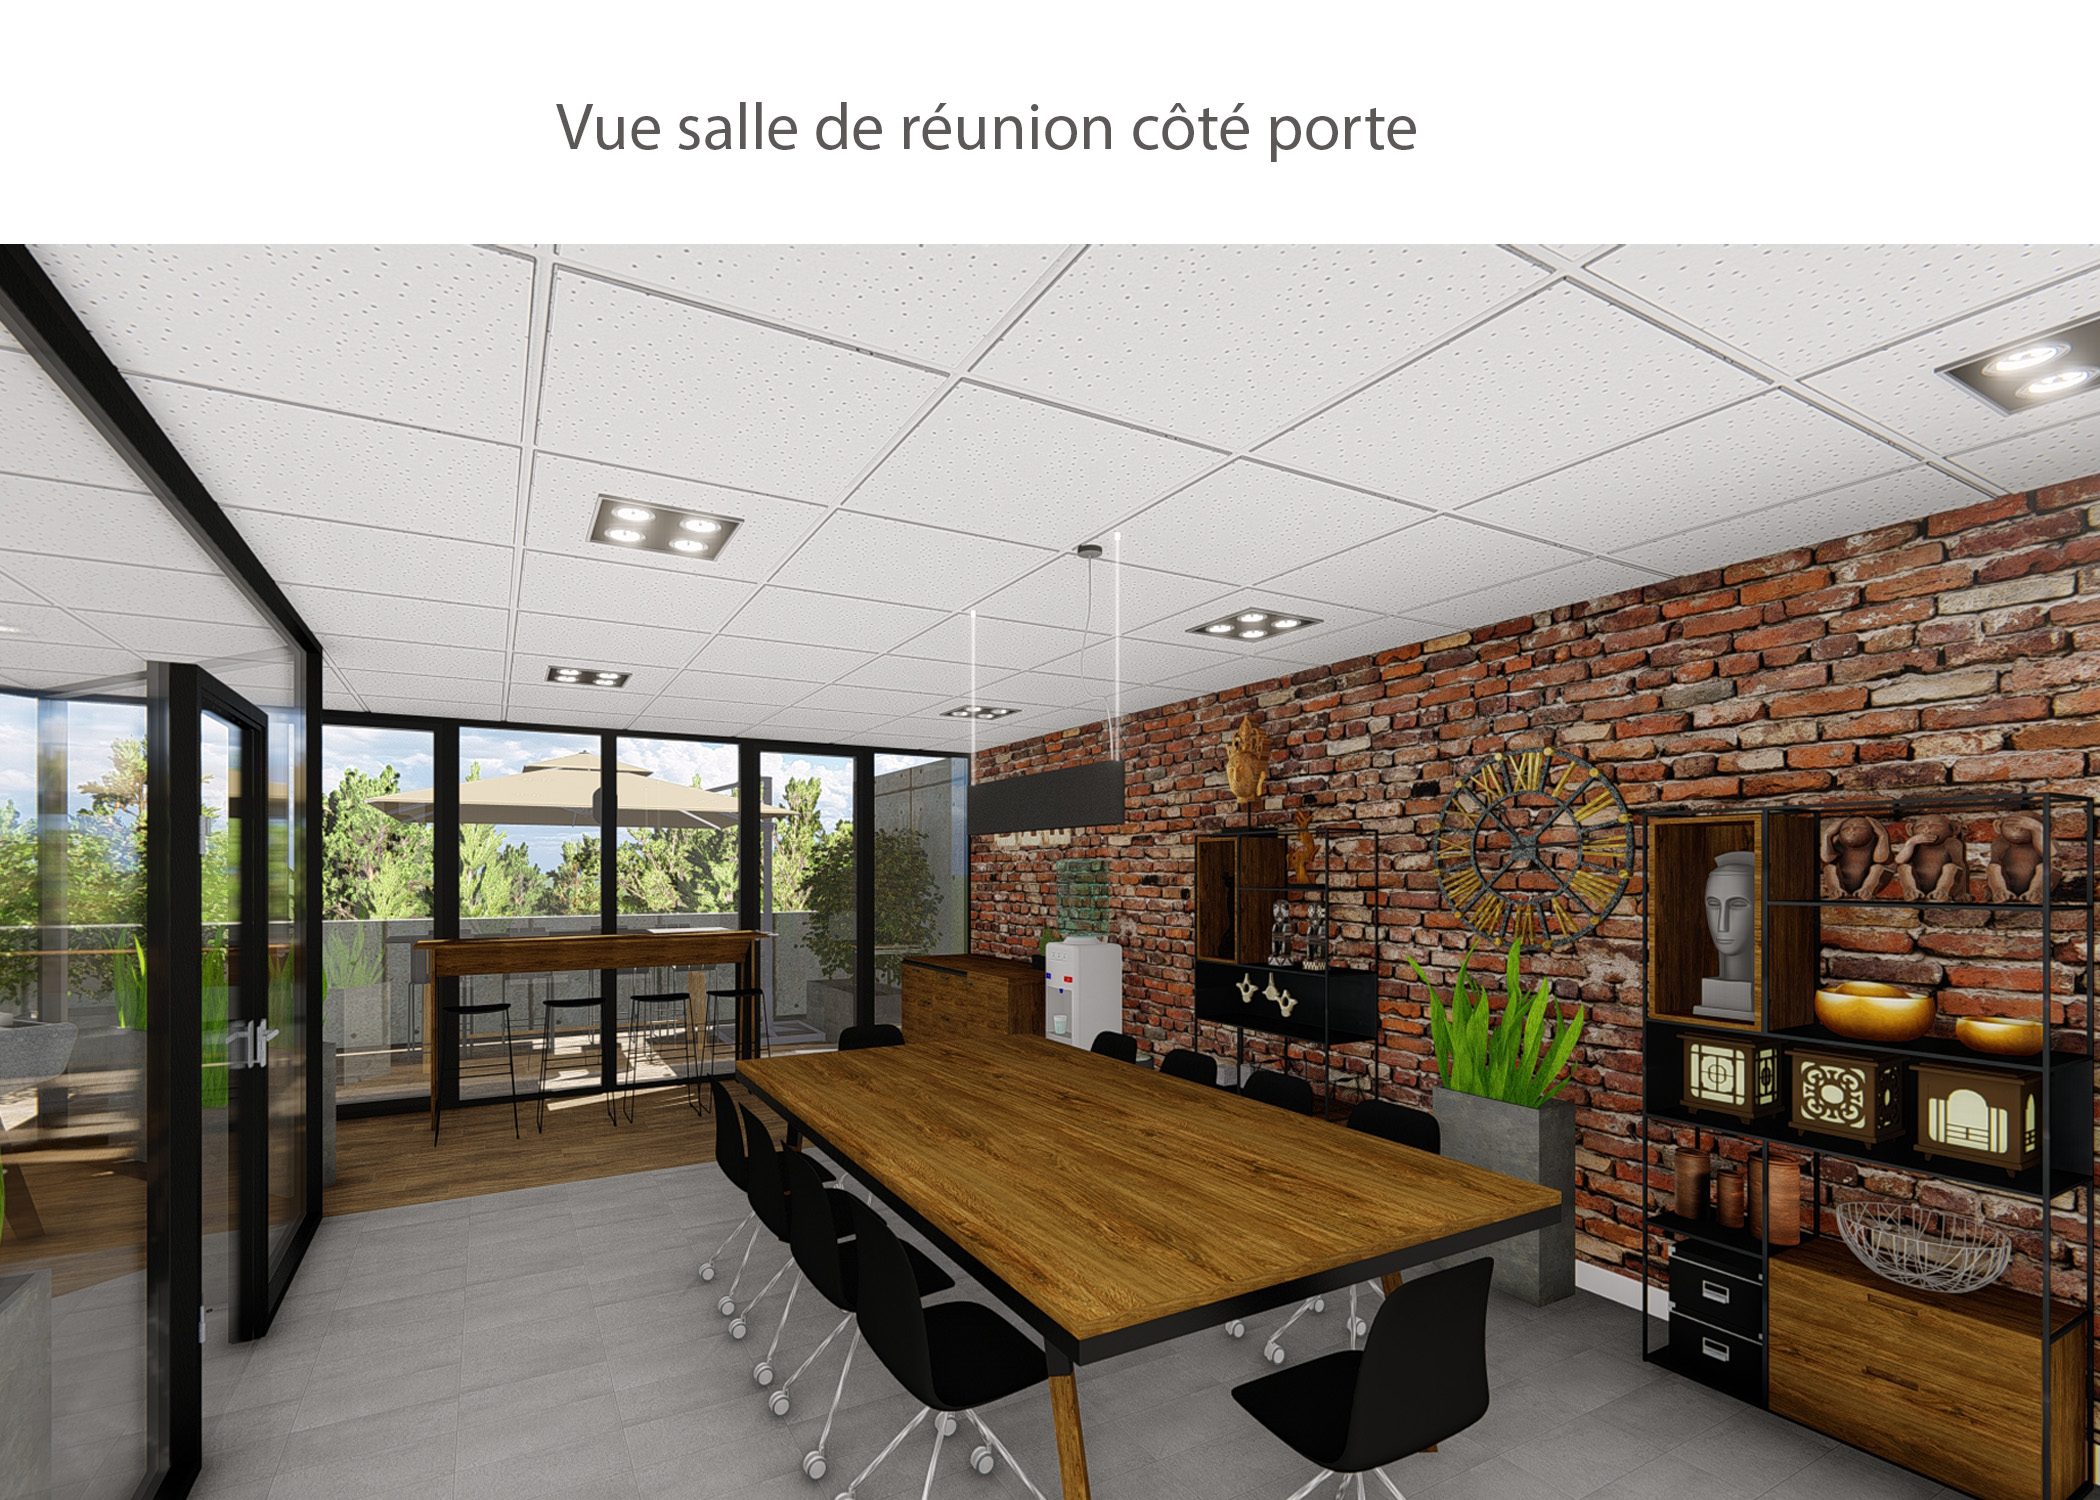 amenagement-decoration-start-up vente en ligne-region parisienne-salle de reunion cote porte-dekho design